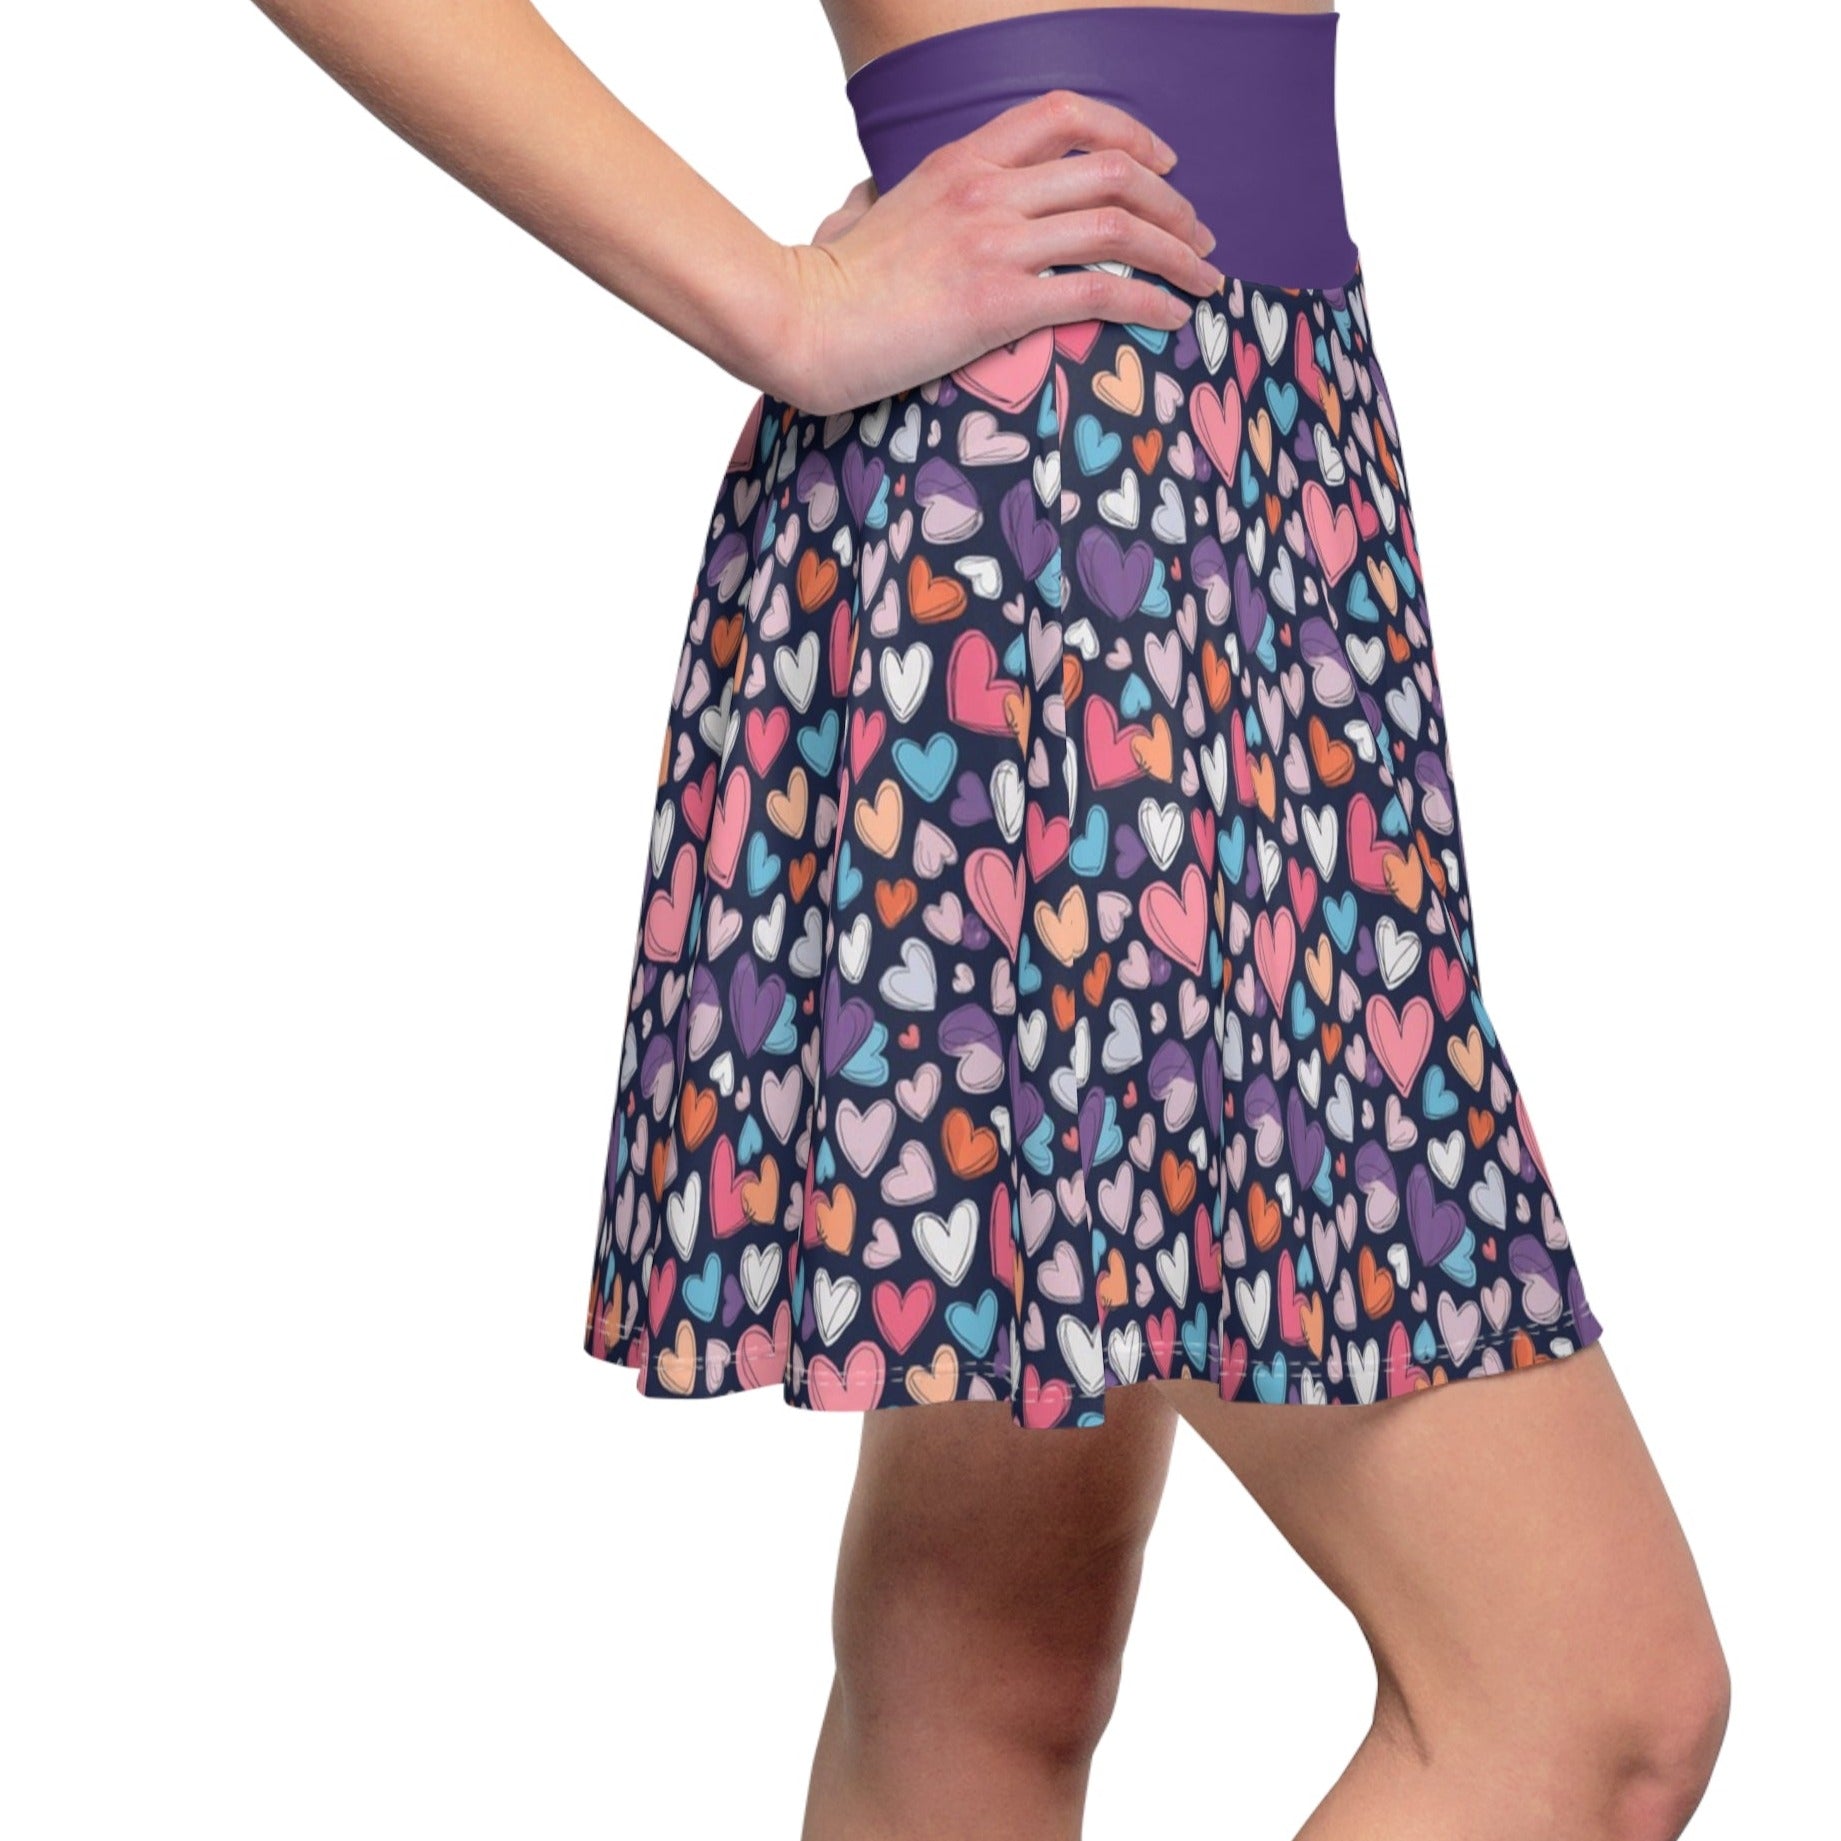 Up-Hearted Purple Rush Women's Skater Skirt (AOP)